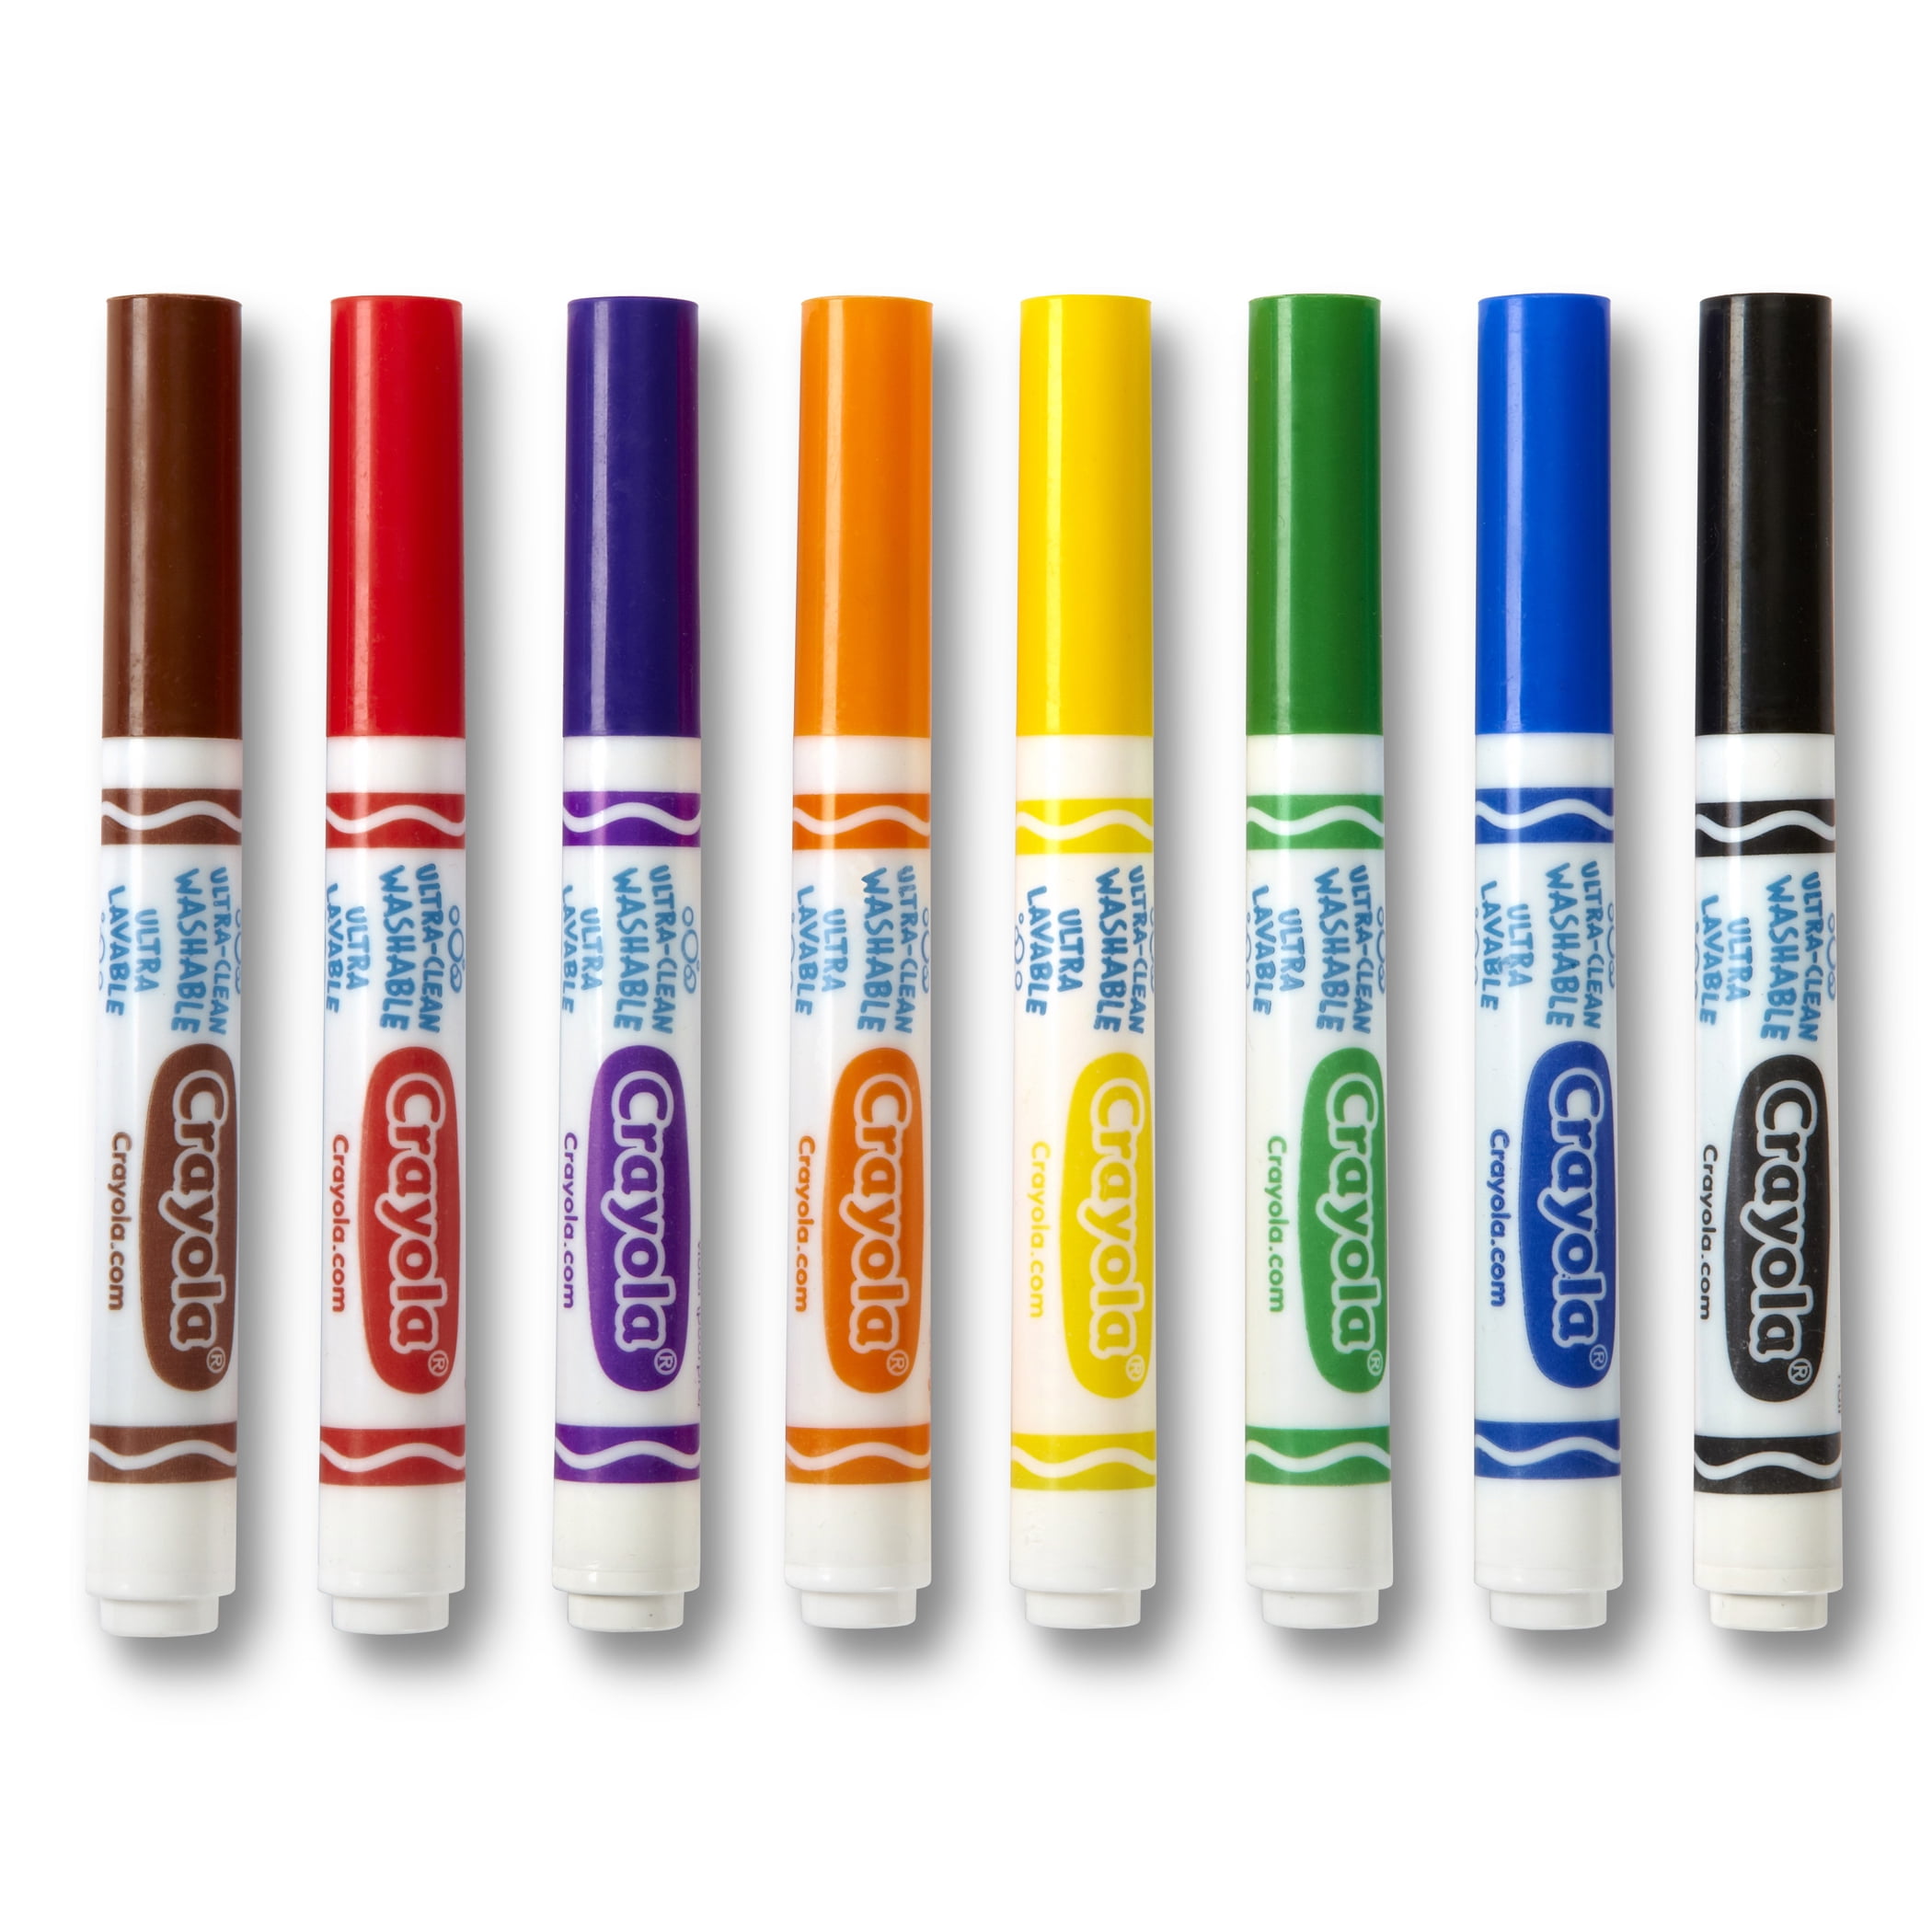 Crayola Marcadores lavables Classpack Arts & Crafts 200ct 8 colores punta  cónica Arts & Crafts Bin588200 Crayola Llc